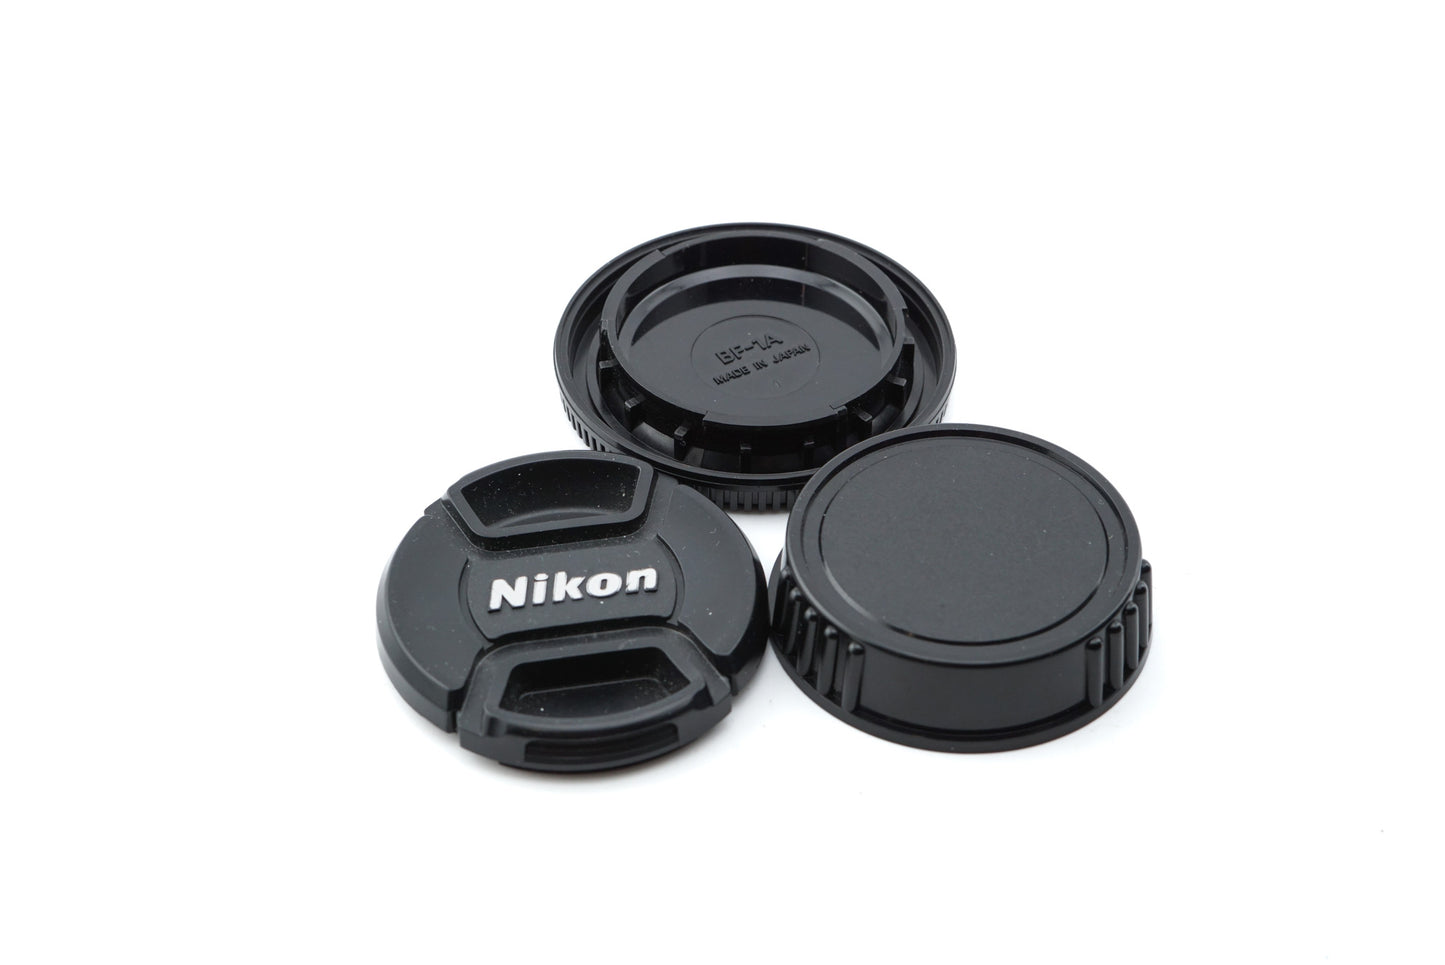 Nikon F90X + MB-10 Battery Pack + 50mm f1.8 AF Nikkor D